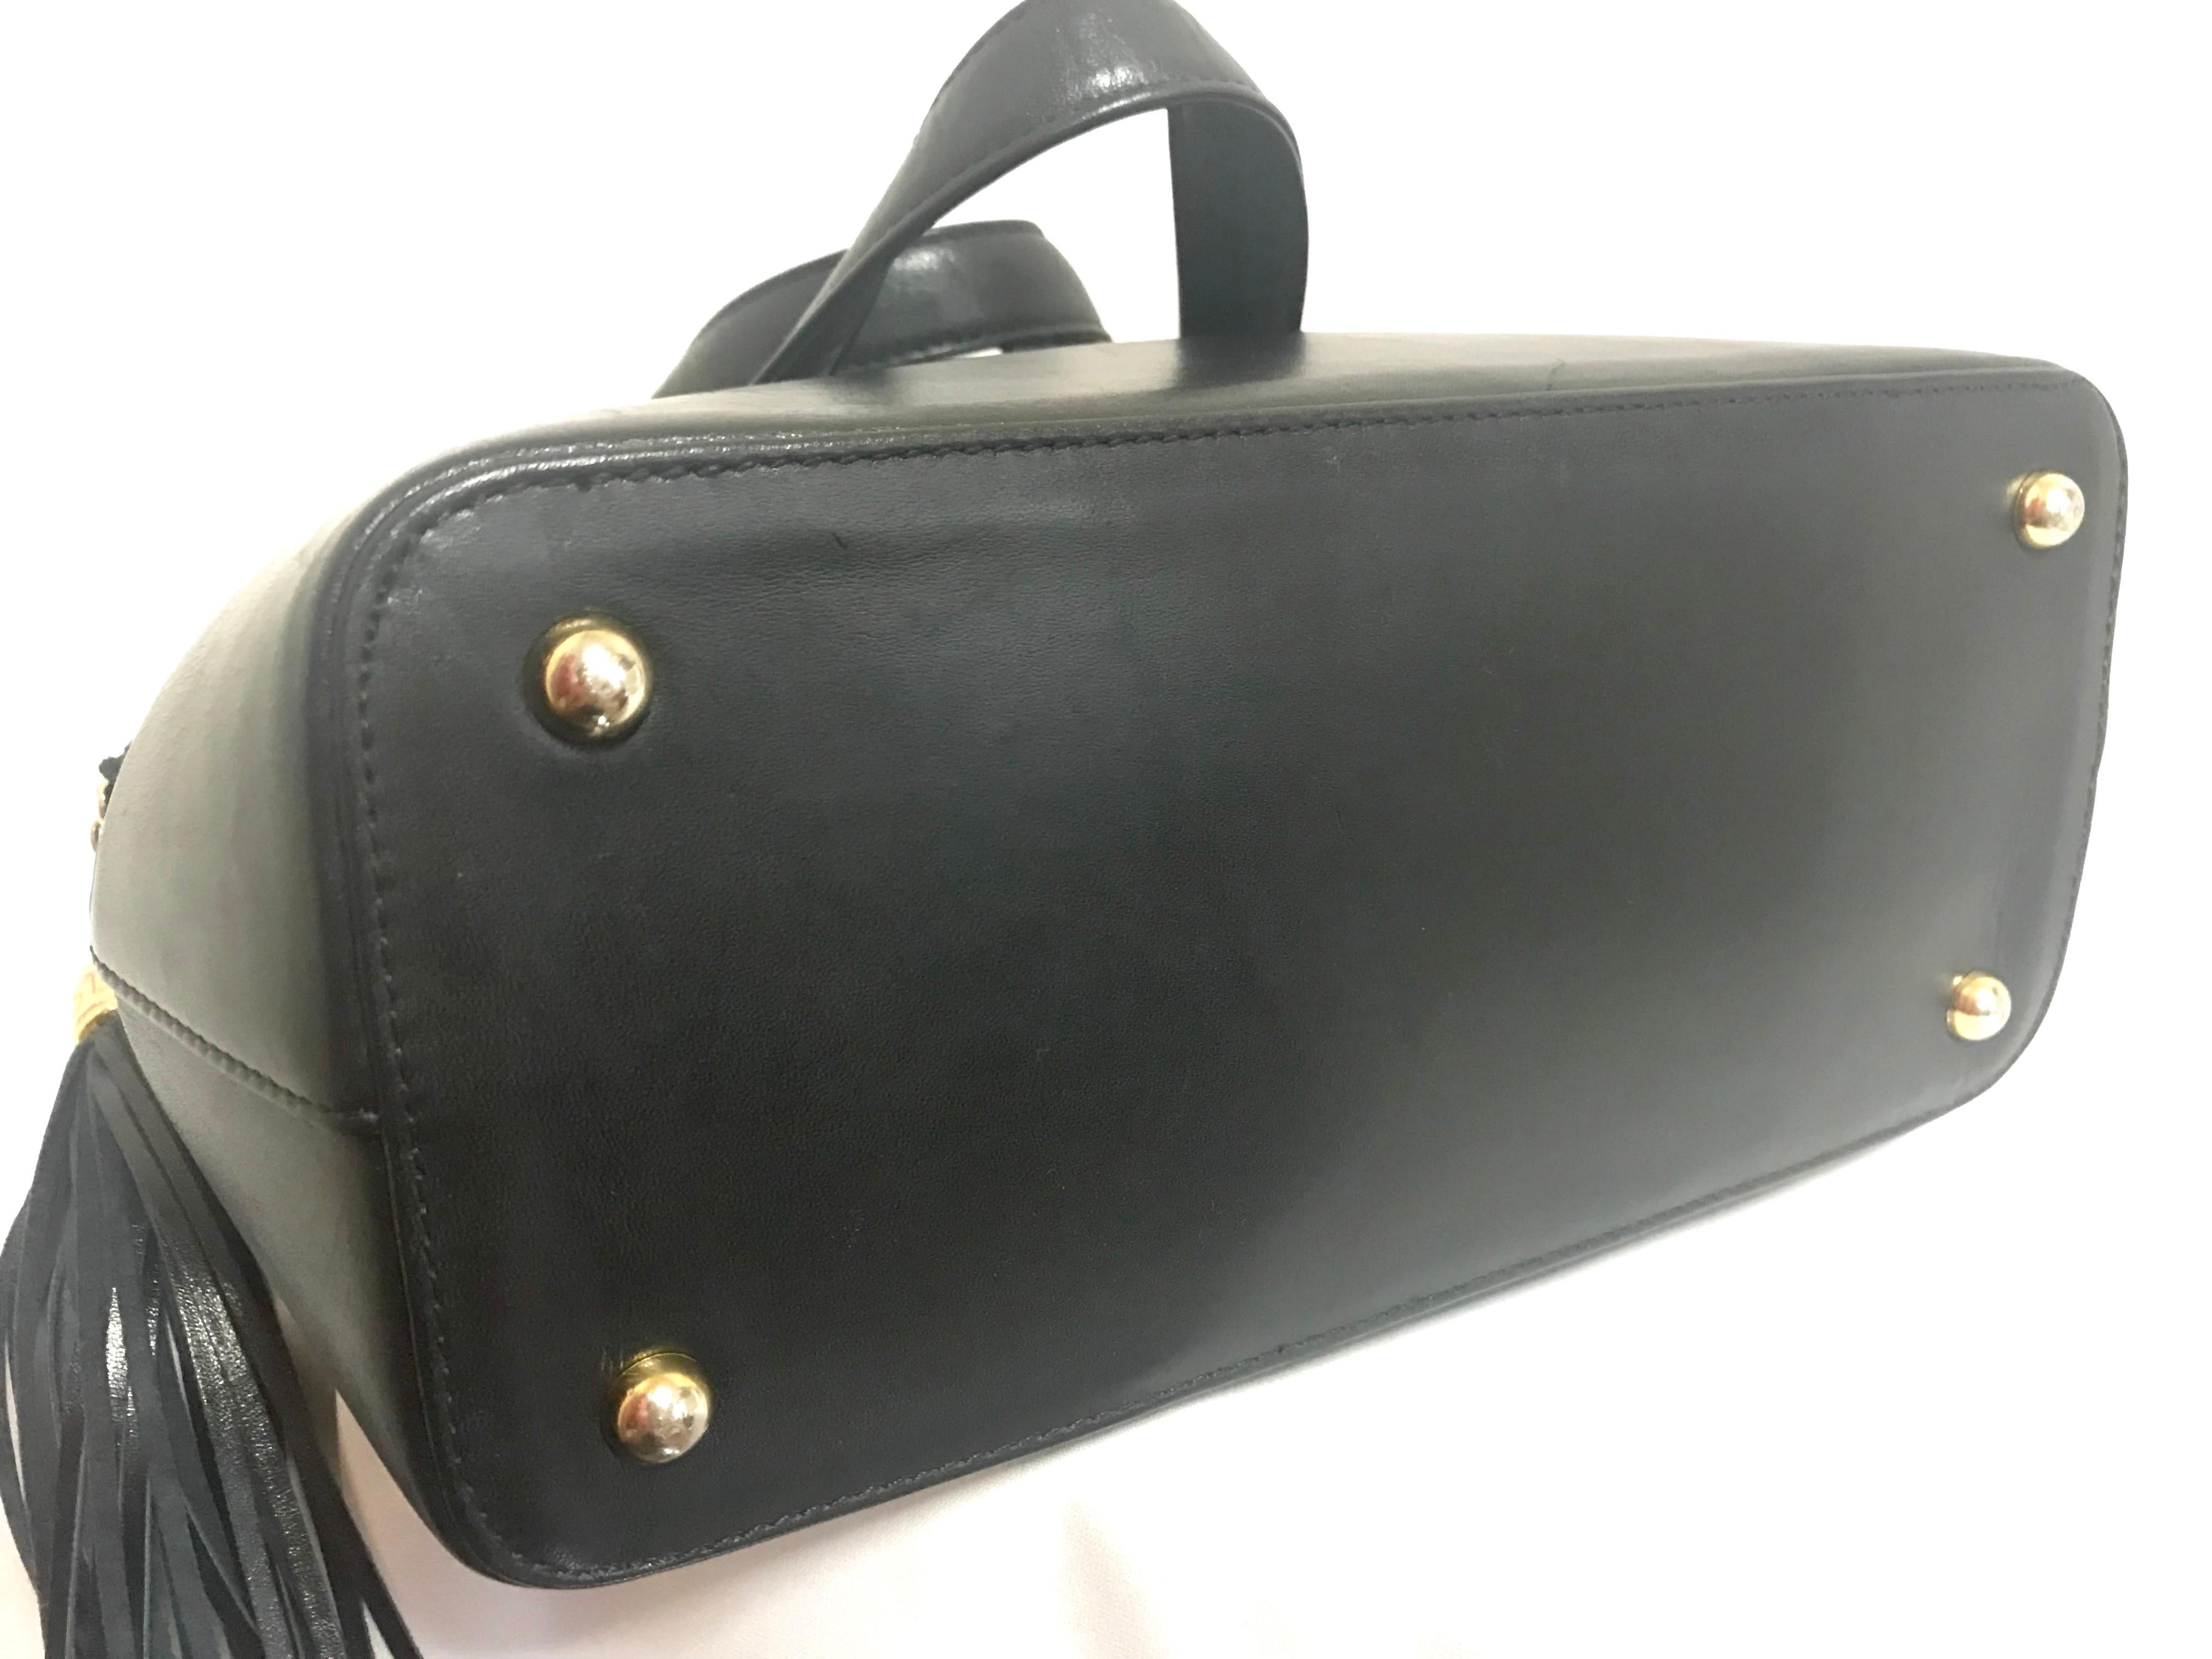 Gianni Versace Vintage black bolide shape bag with a tassel and sunburst motifs  For Sale 7